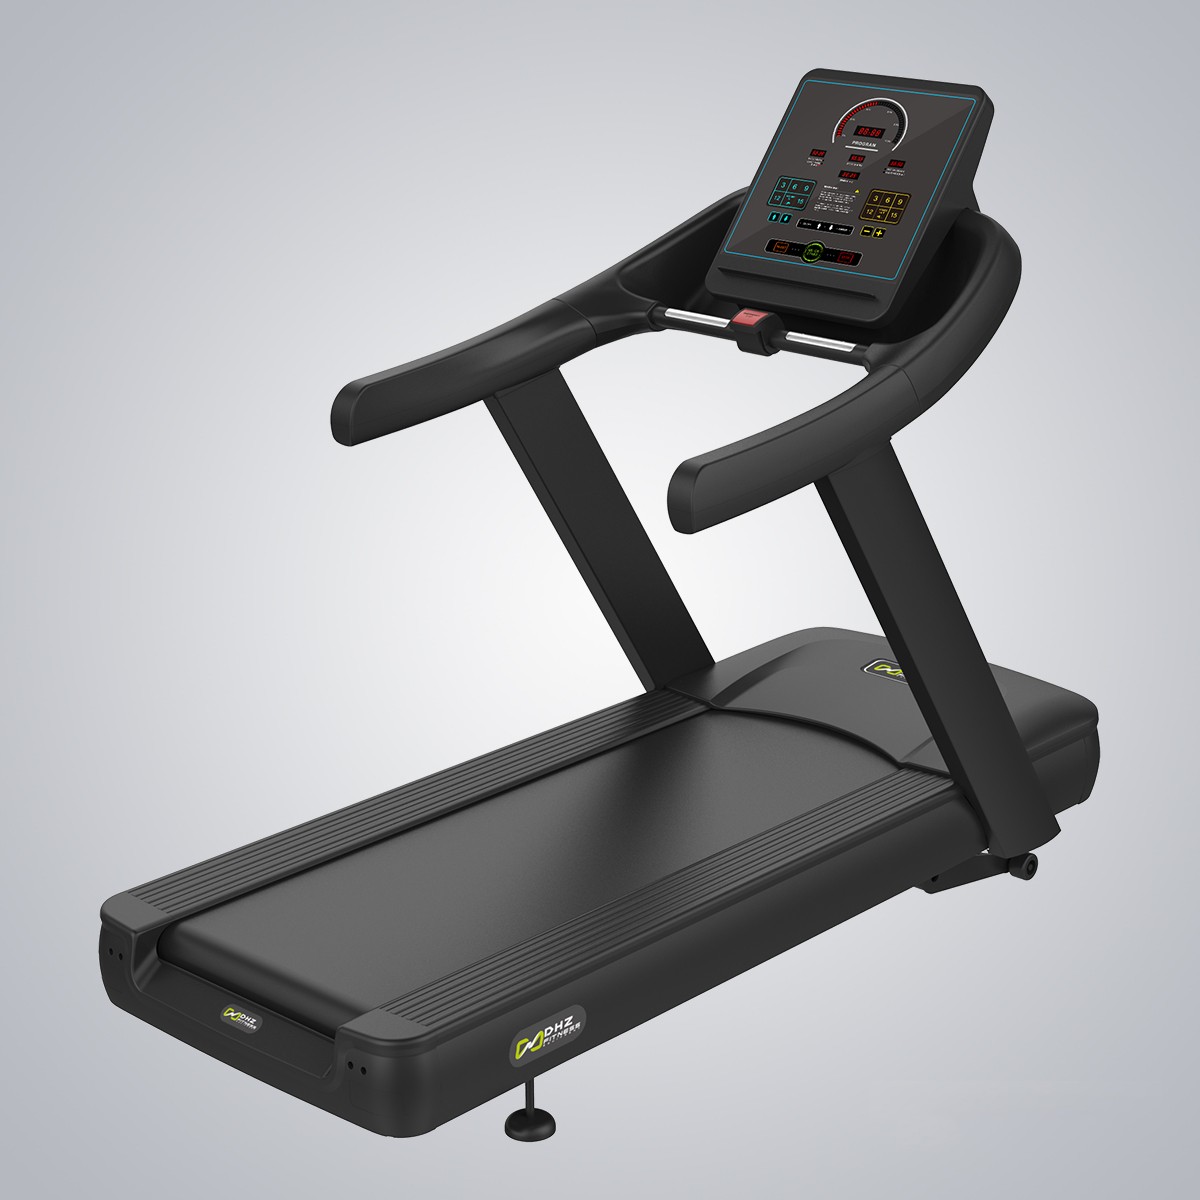 Treadmill-X8400-1